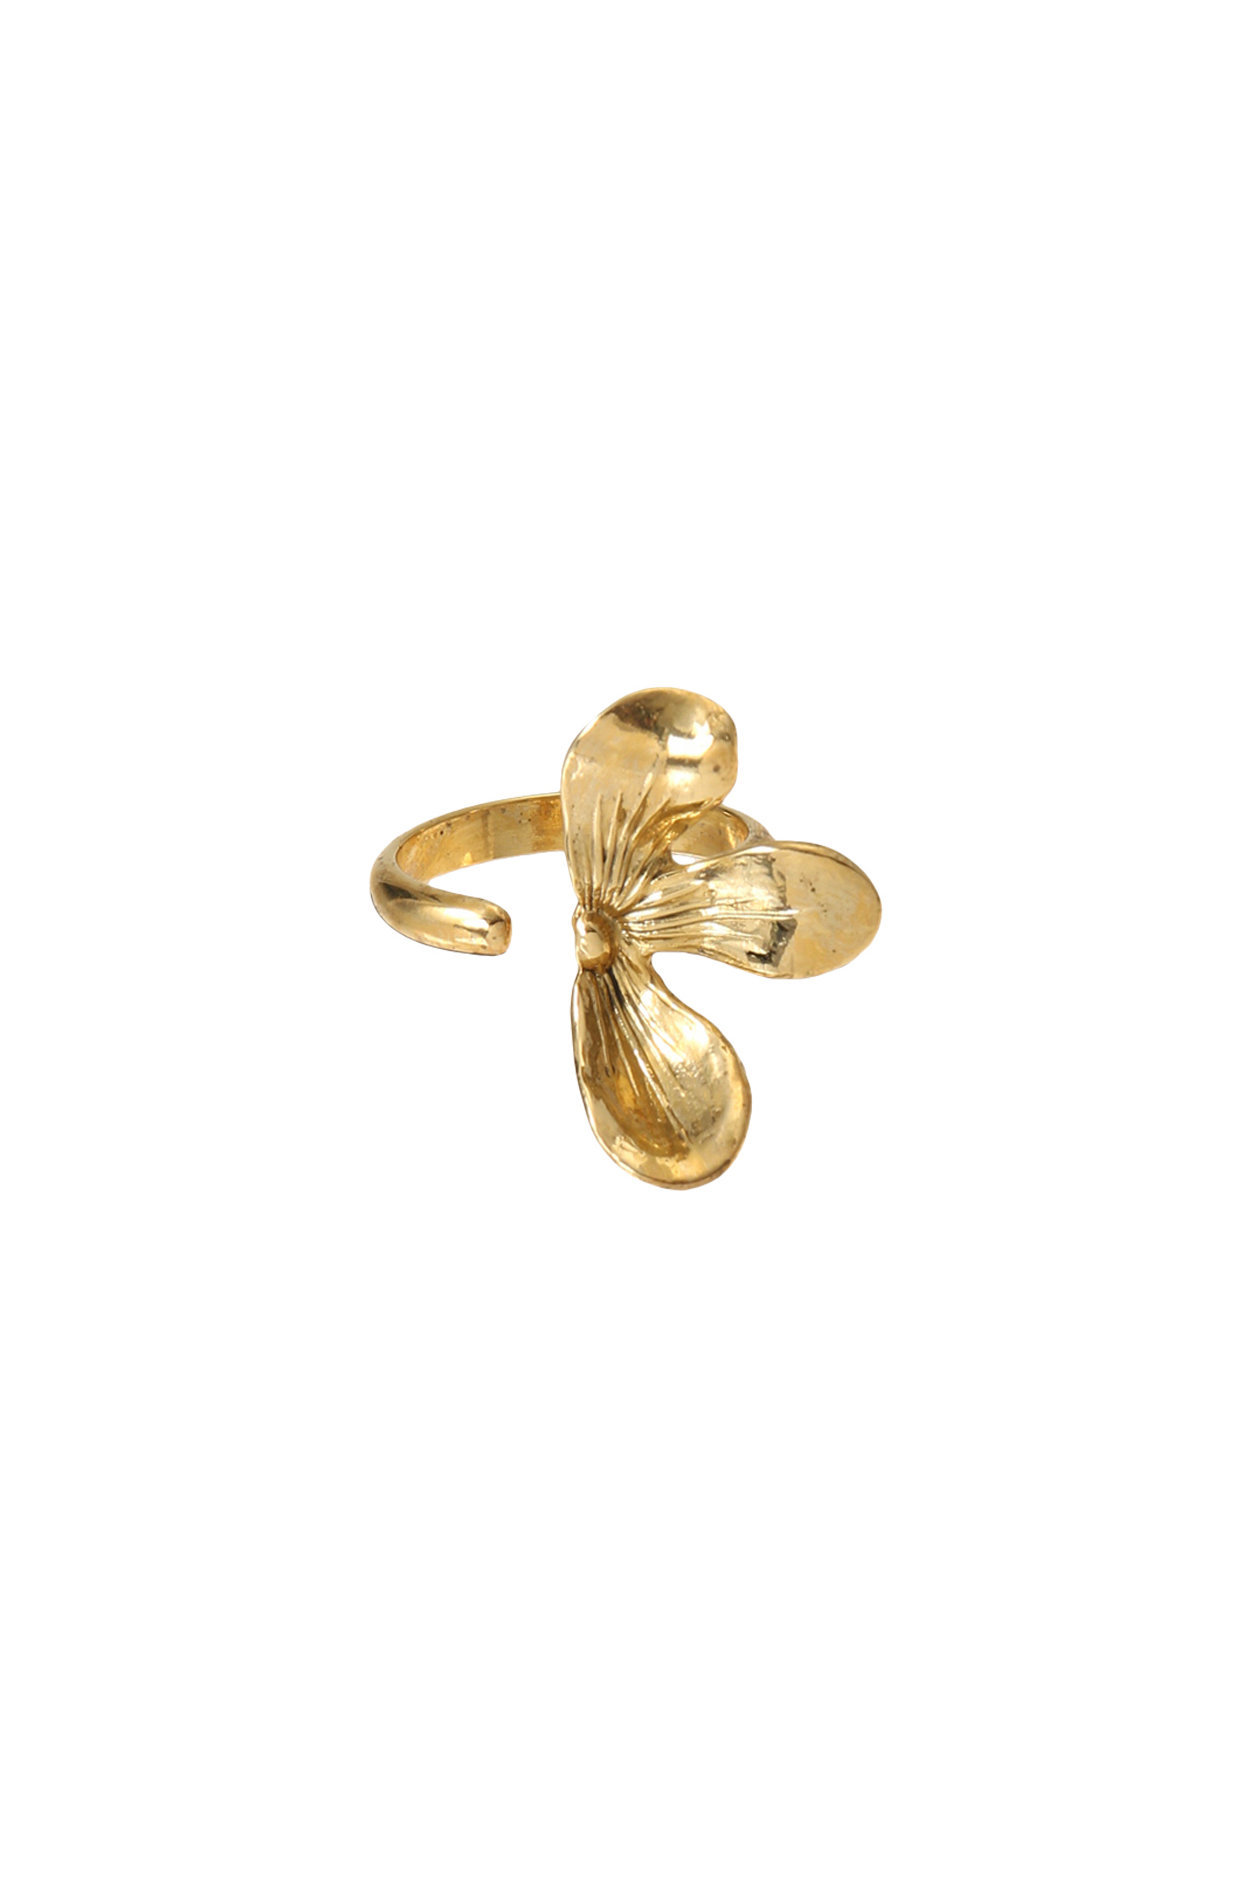 アデル ビジュー/ADER.bijouxのJOY half petal リング(ゴールド/21295302)